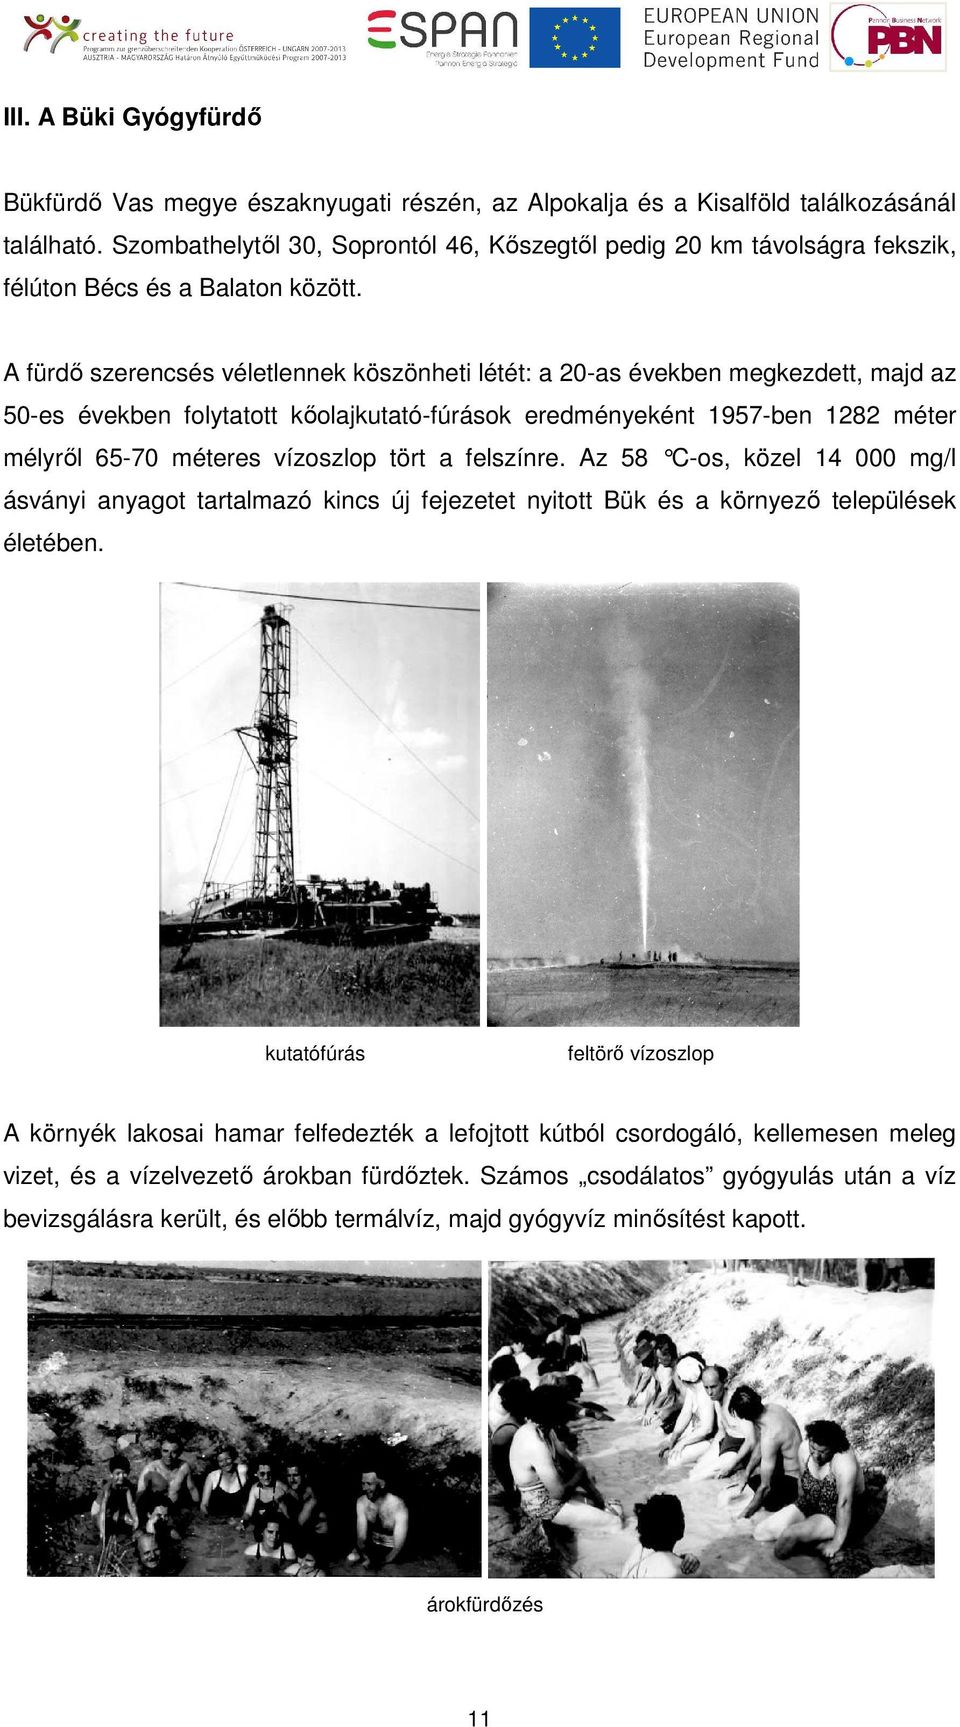 A fürdı szerencsés véletlennek köszönheti létét: a 20-as években megkezdett, majd az 50-es években folytatott kıolajkutató-fúrások eredményeként 1957-ben 1282 méter mélyrıl 65-70 méteres vízoszlop